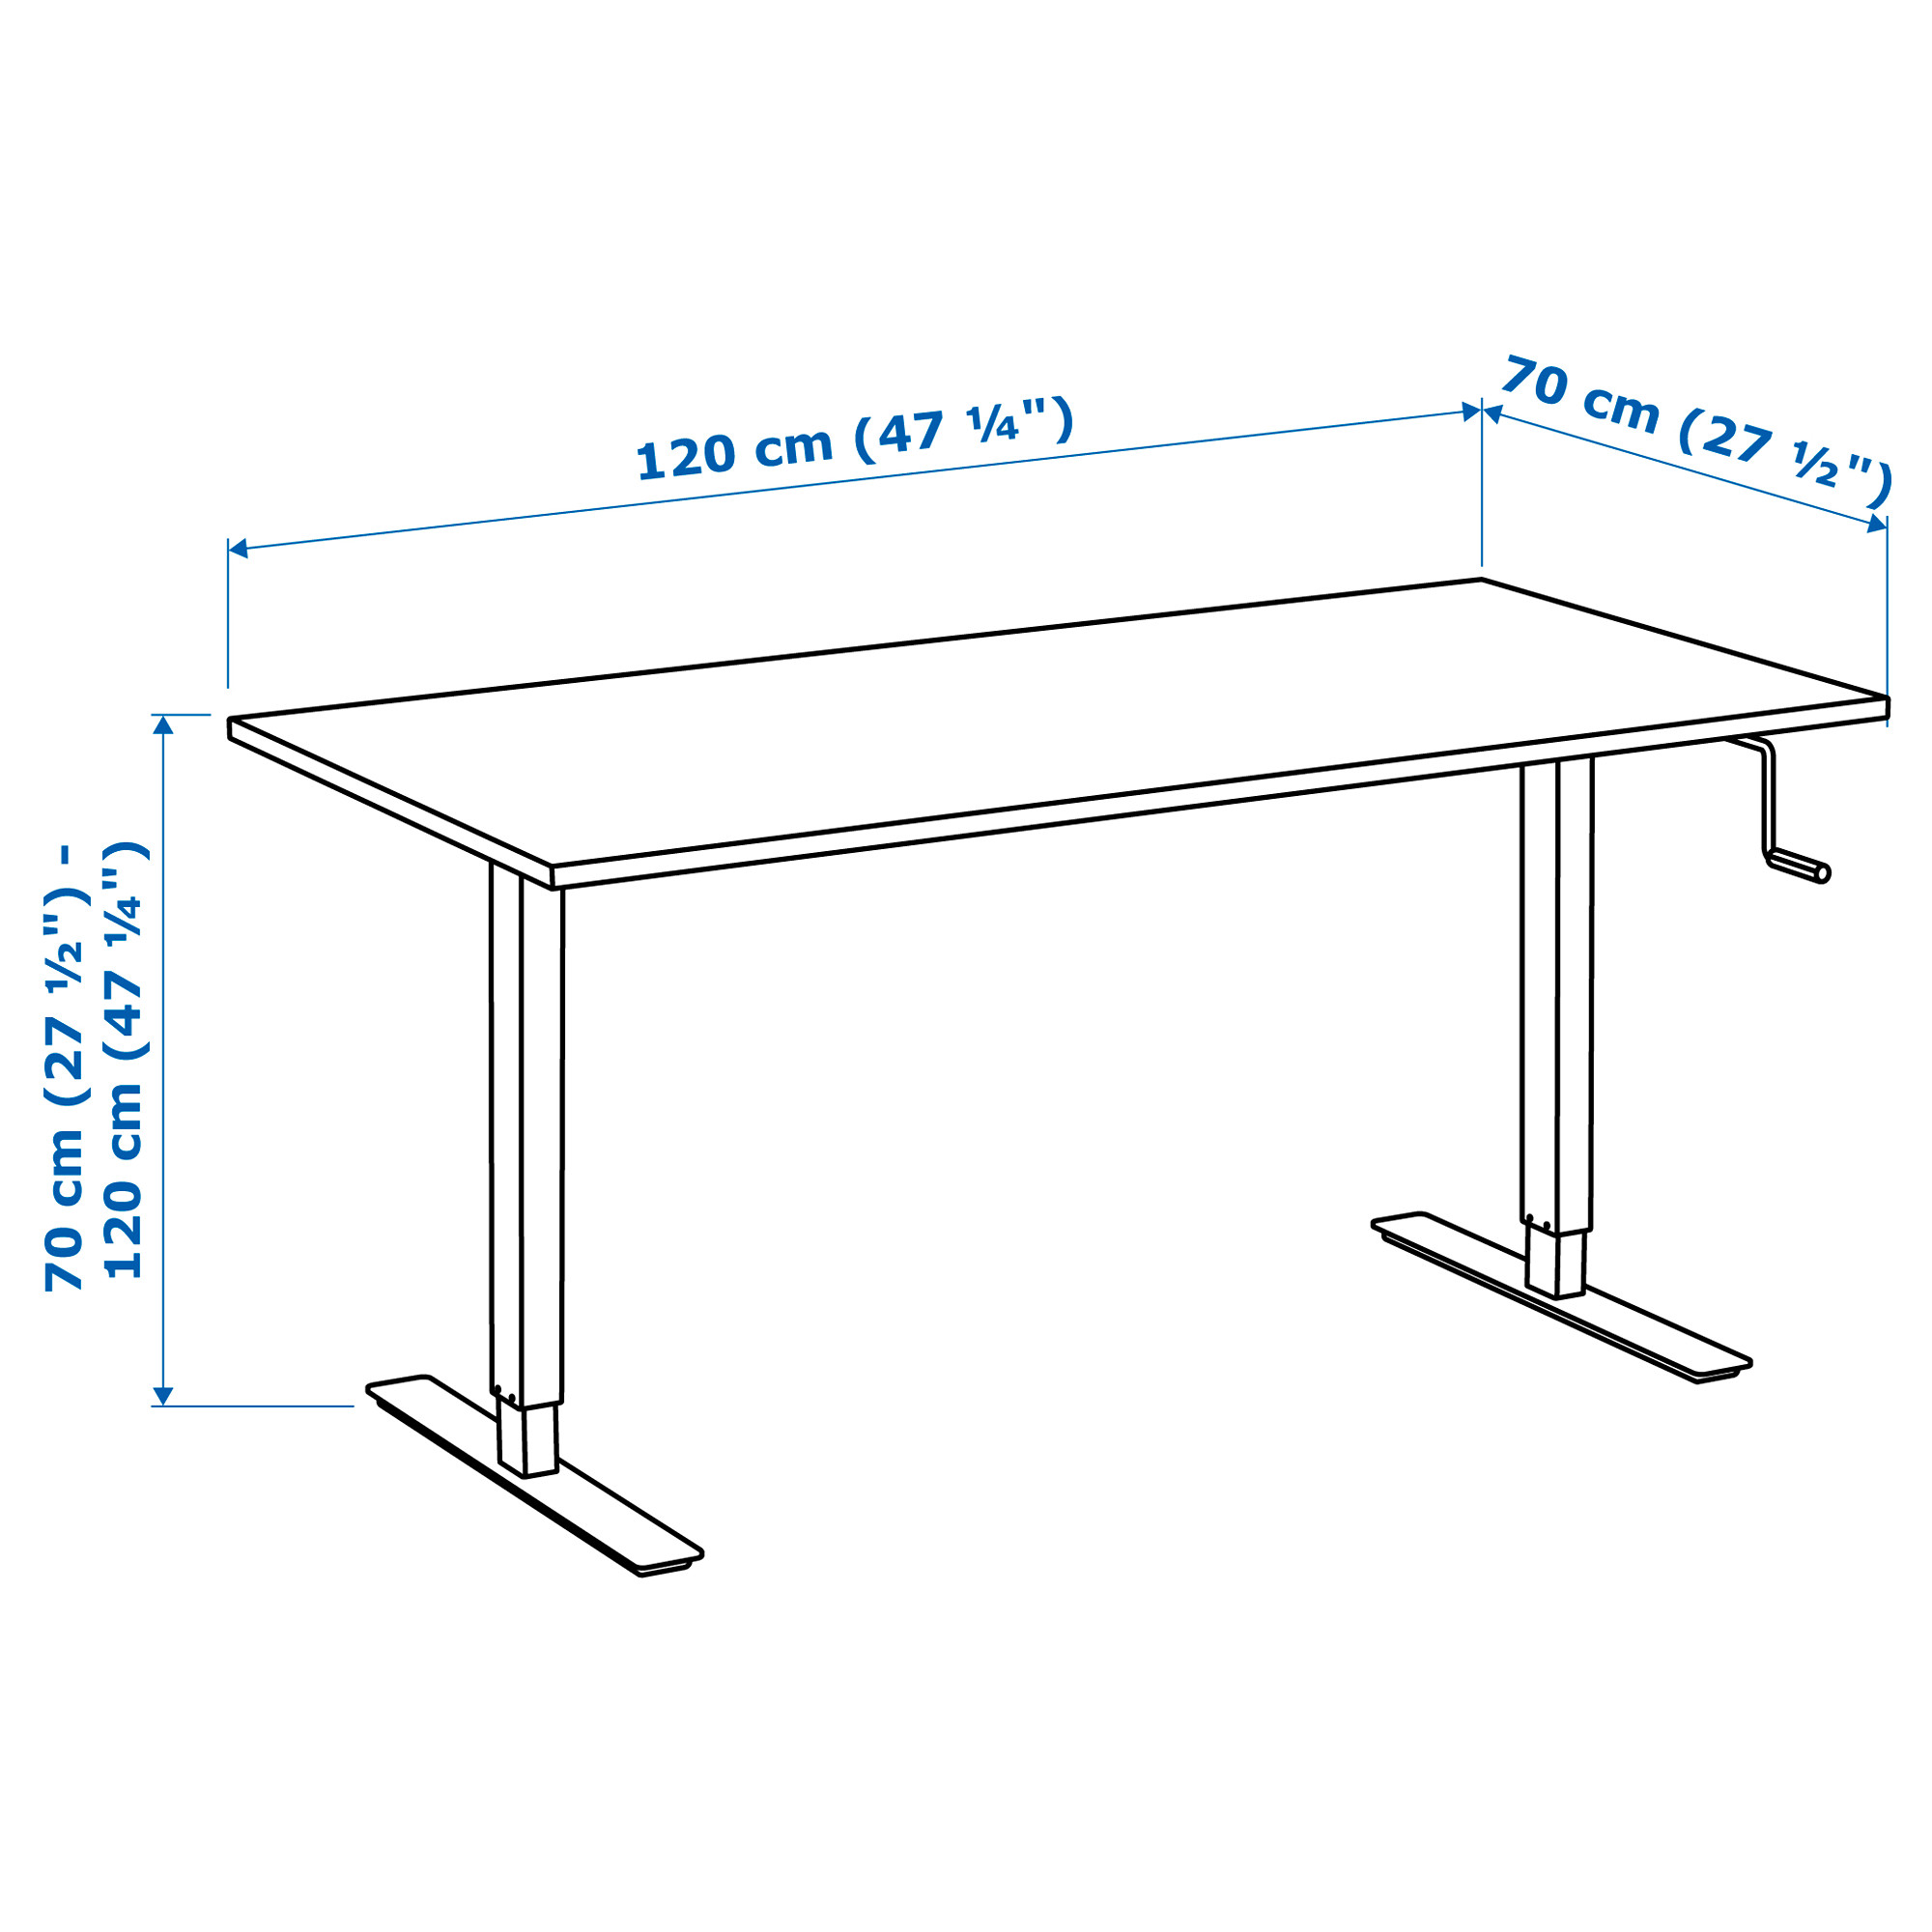 Стол высотой 100 см. Ikea skarsta 160x80. Ikea skarsta стол. Стол икеа регулируемый по высоте. Регулируемый стол икеа СКАРСТА.